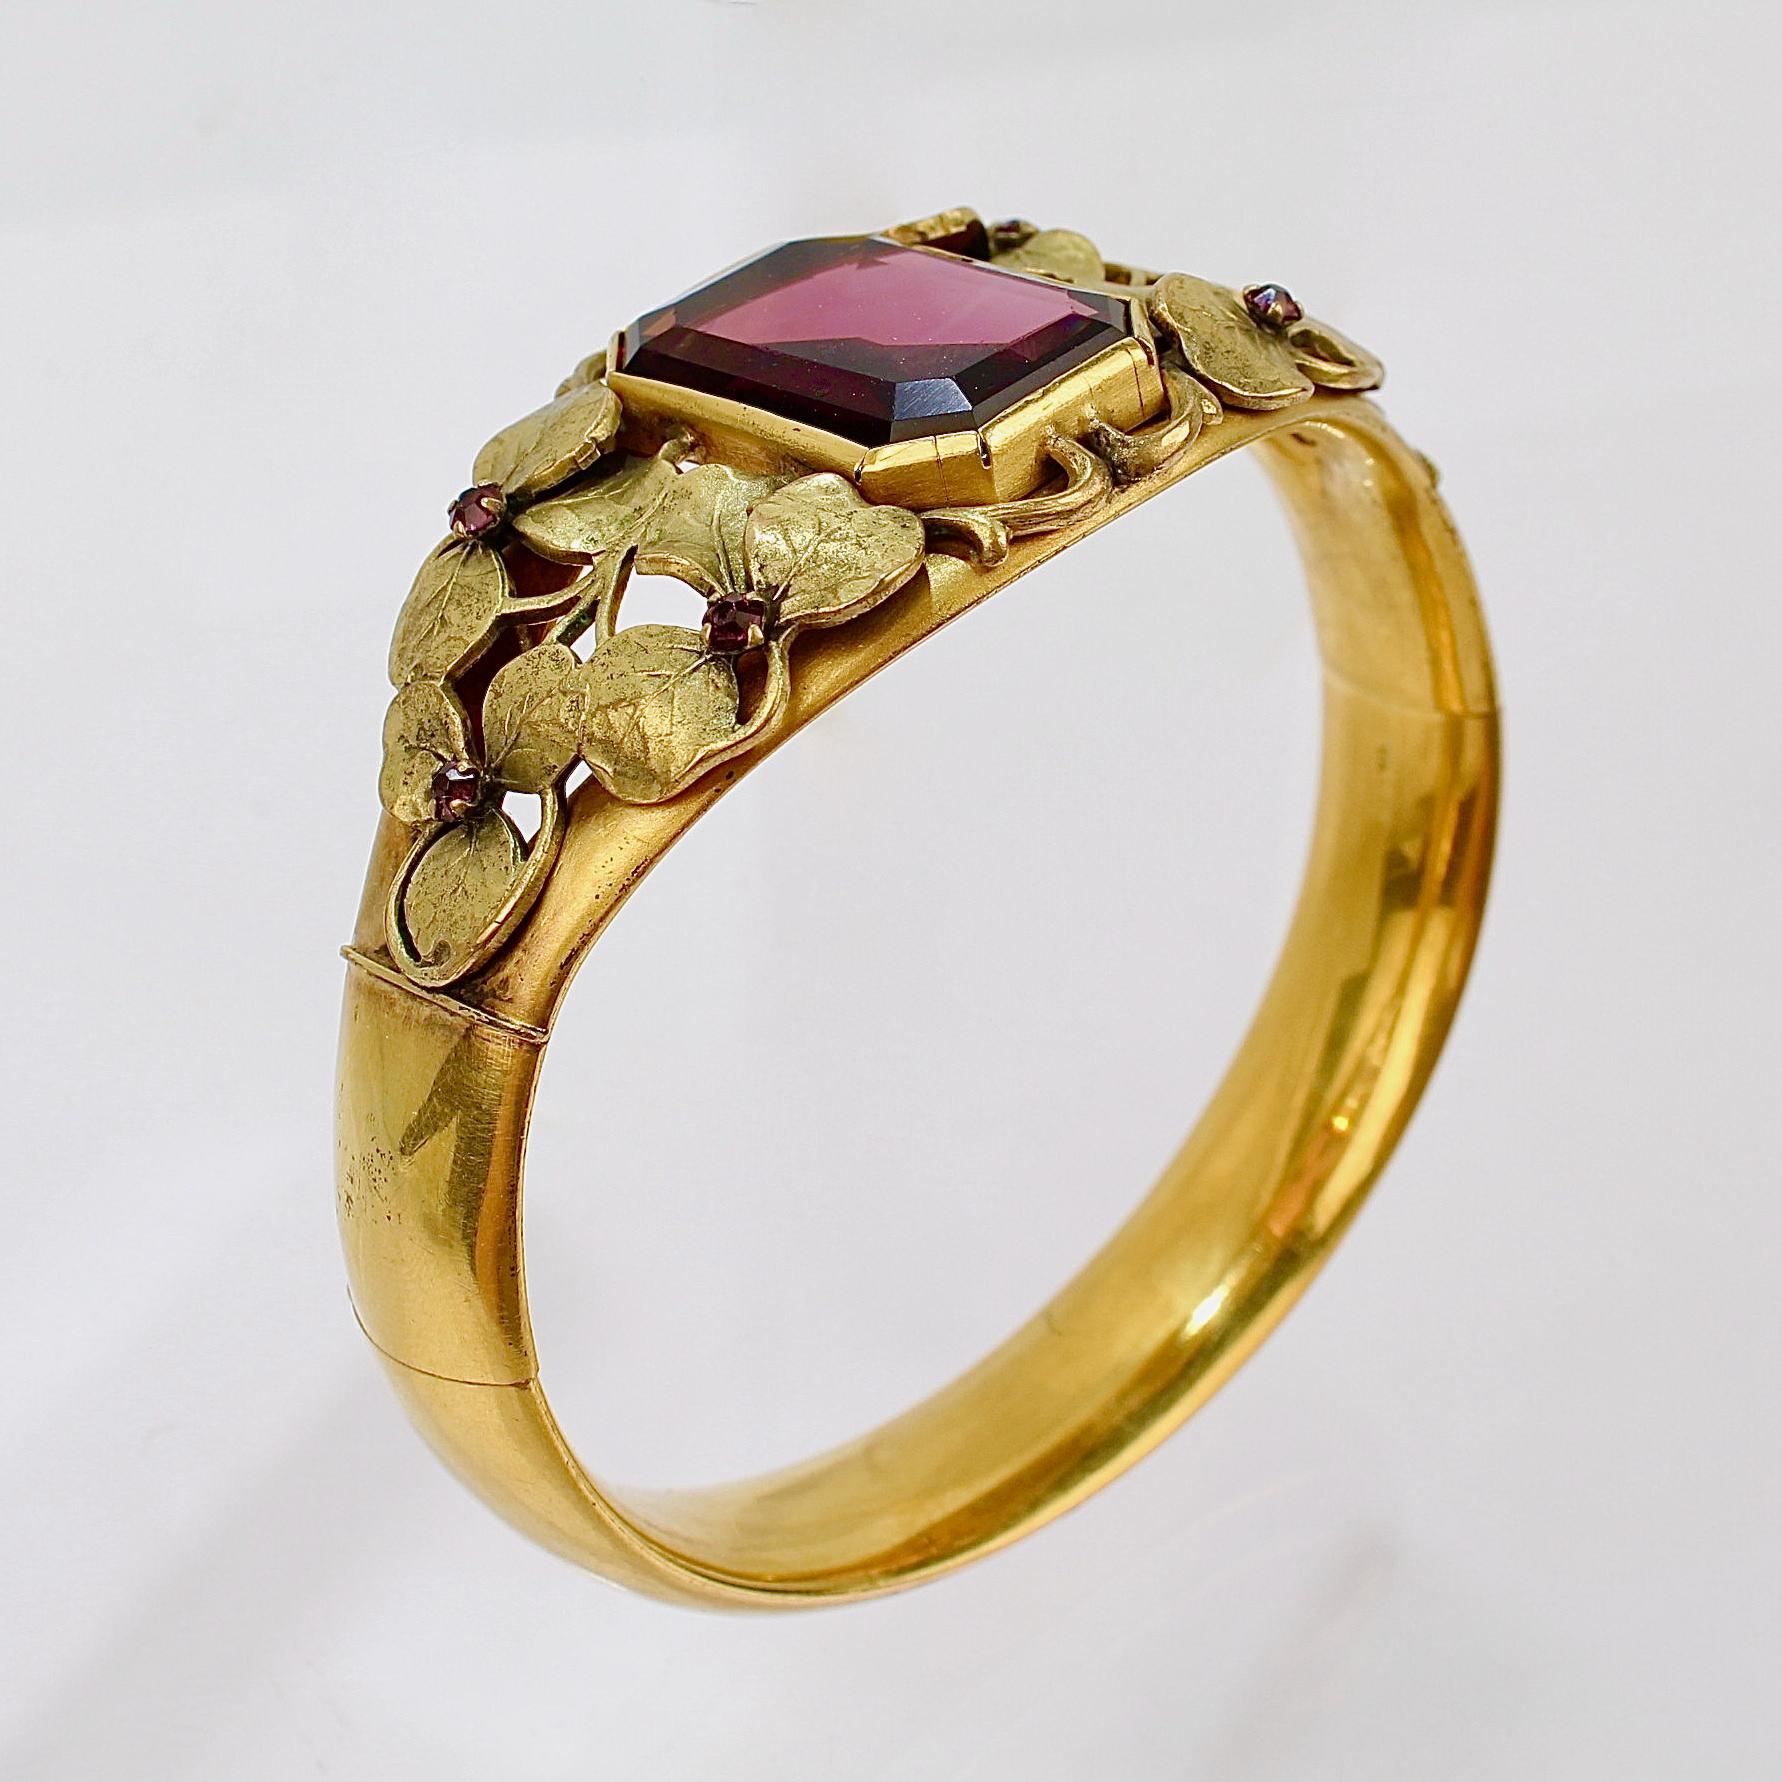 Un très beau bracelet victorien en or.

Fabriqué par la société W. & S. Blackinton Co. de Meriden, CT, à la fin du 19e siècle.

Le centre est serti d'une pierre en verre violet de taille émeraude et entouré de feuilles d'or.  

Les feuilles veinées